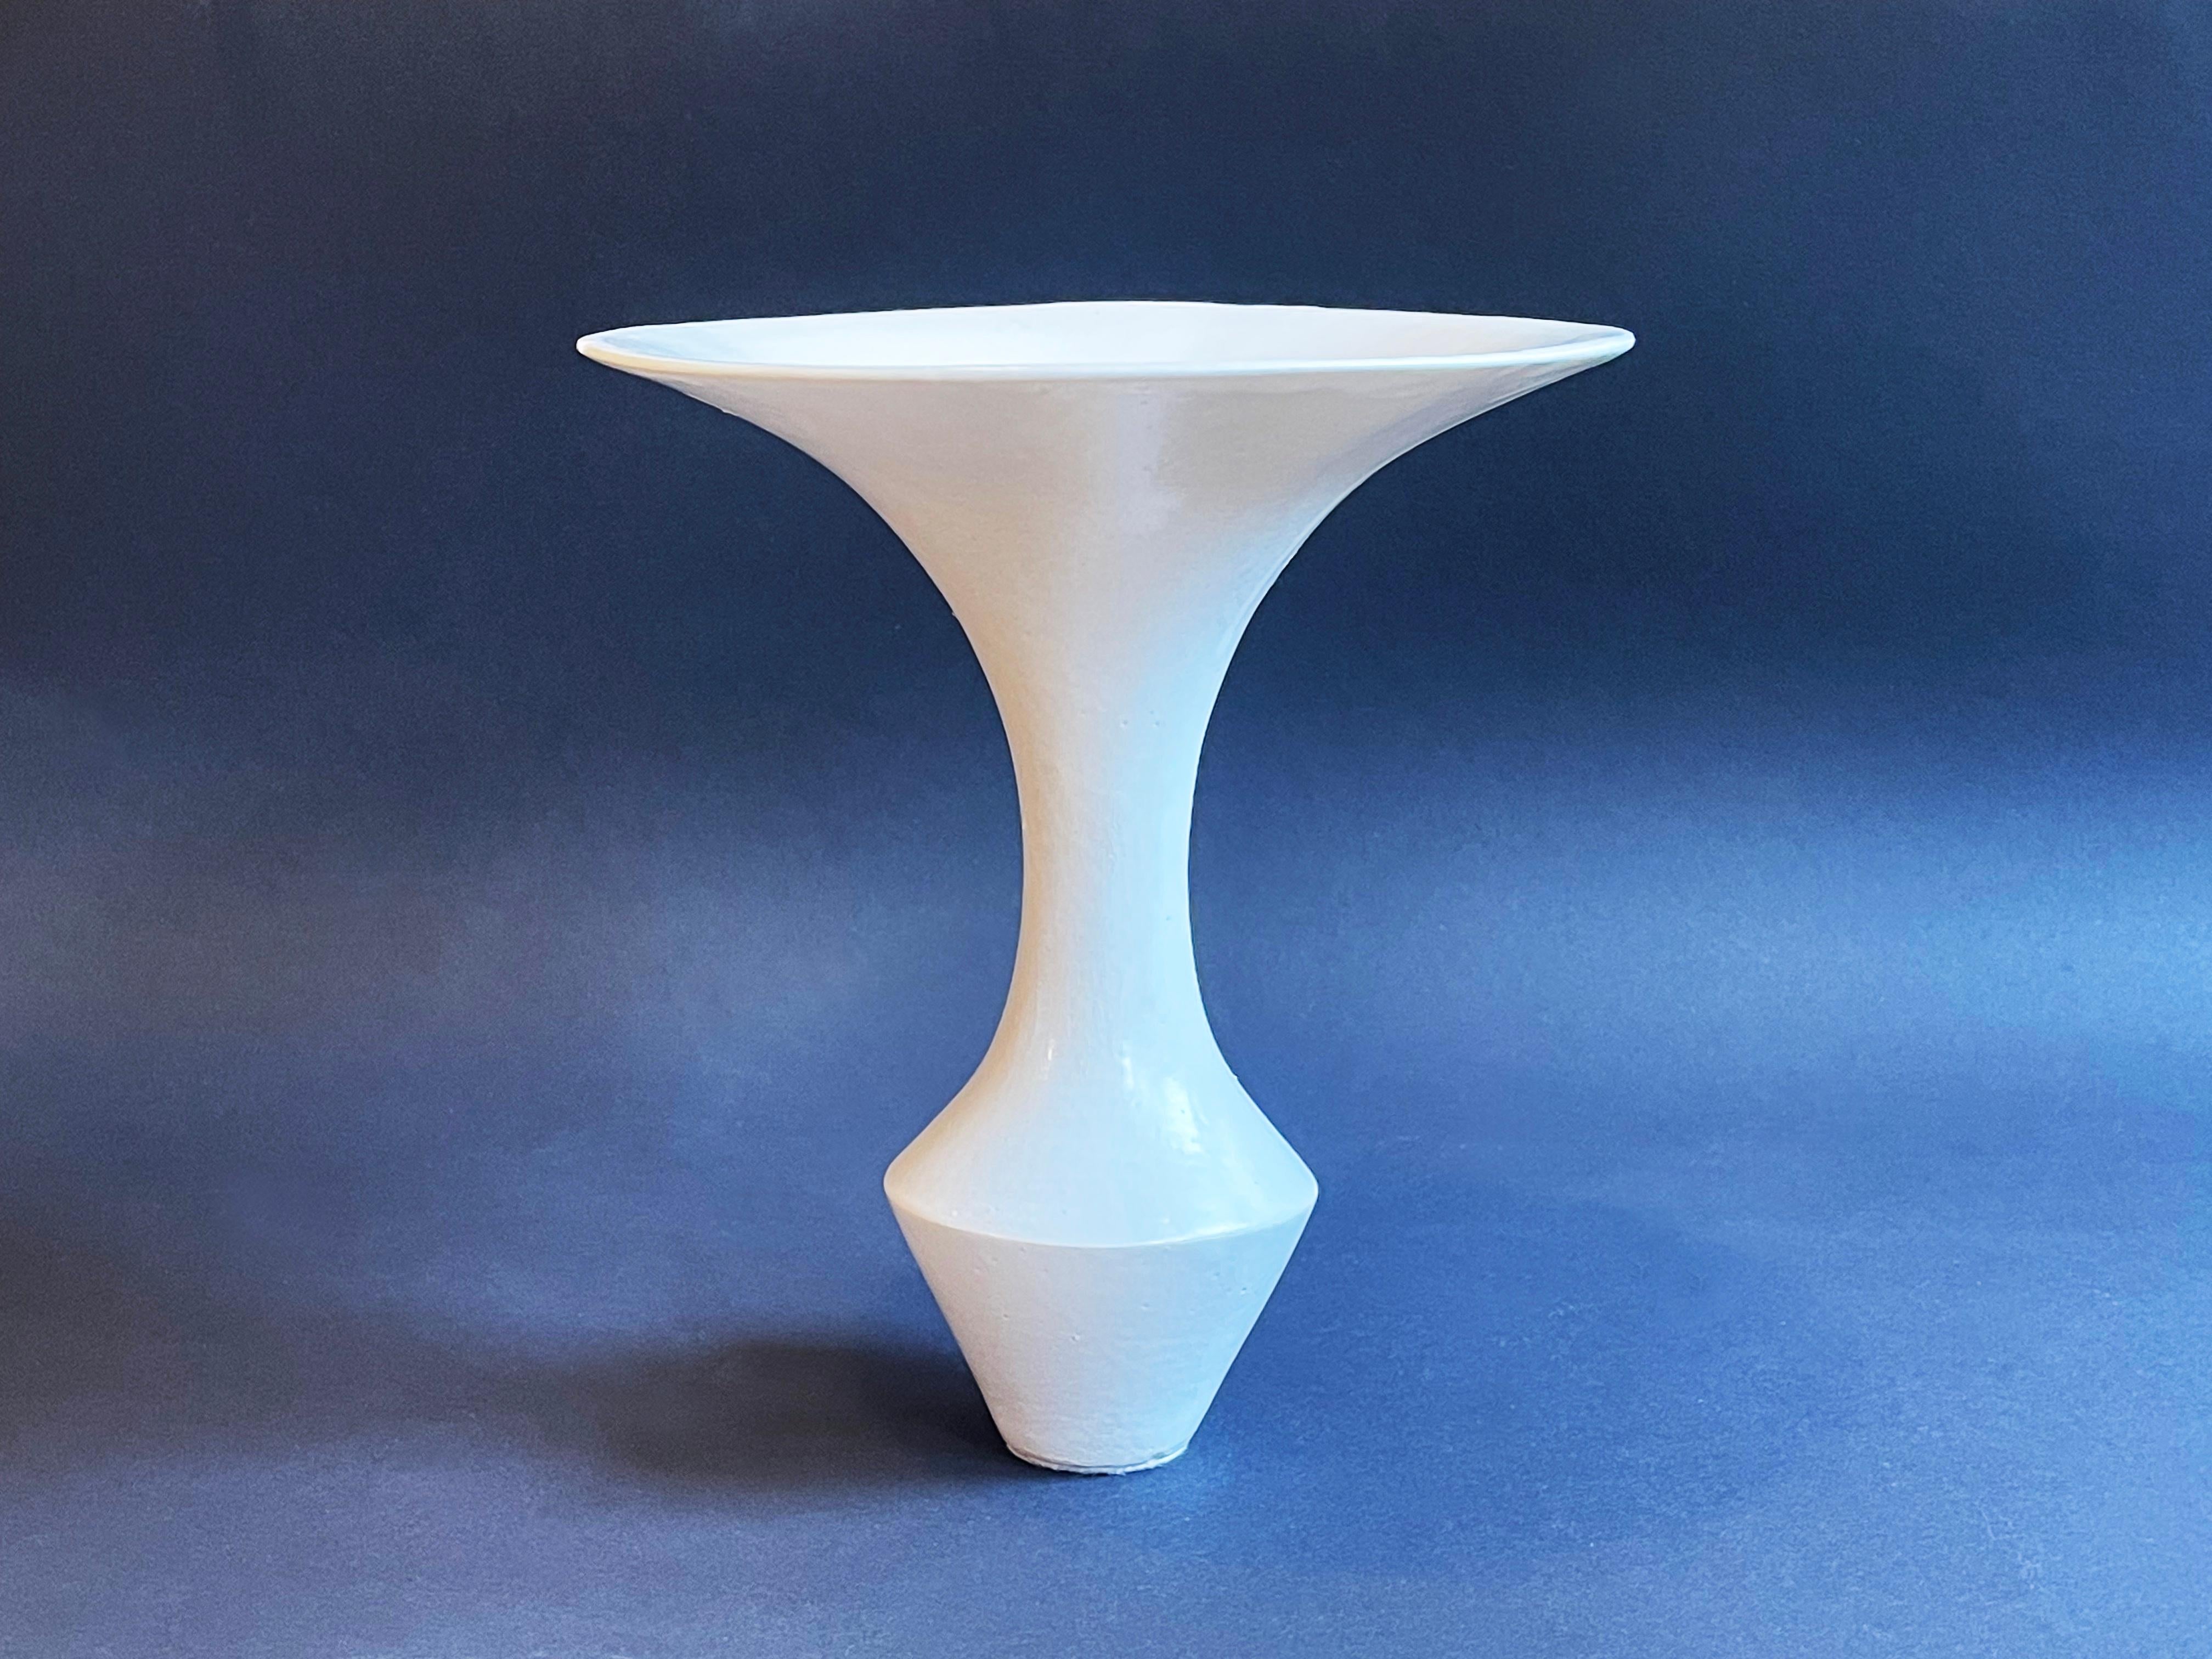 Einzigartige und sehr minimalistische Ikebana-Vase, die für sich selbst als Kunstwerk steht.
Studio-Keramik, wahrscheinlich in Deutschland in den 1970er bis 1980er Jahren hergestellt.
Wunderschöne, leicht gräuliche weiße oder cremefarbene Glasur,